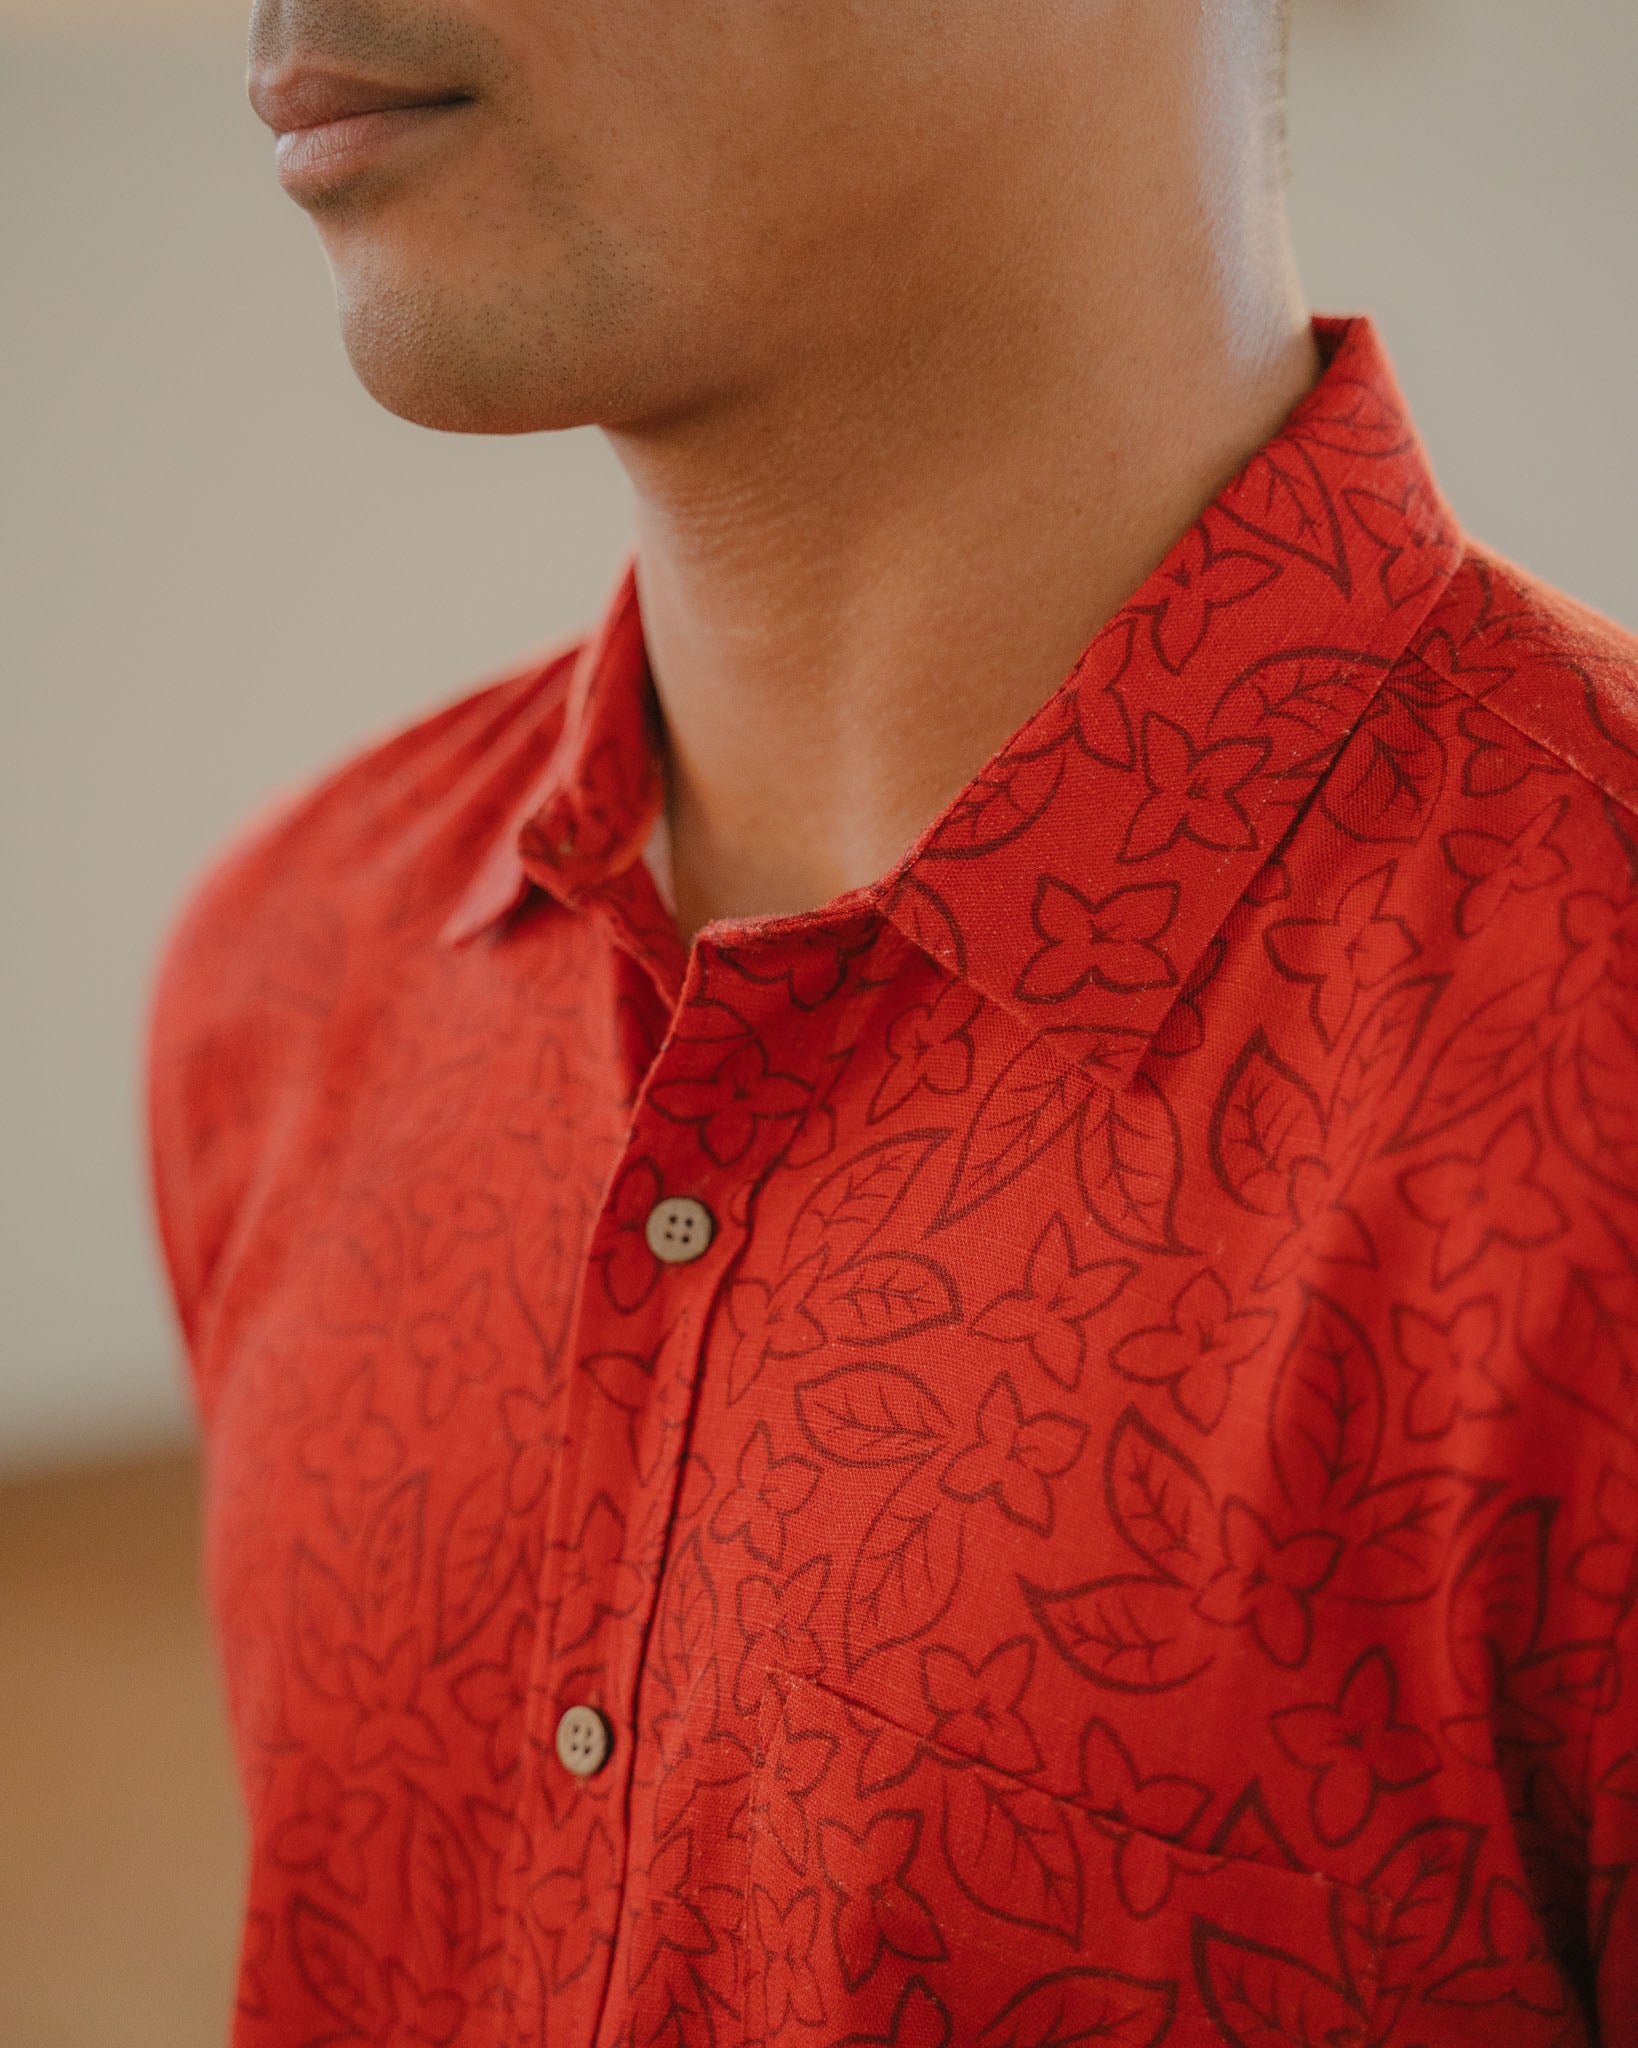 Pop-Up Mākeke - Aloha Ke Akua Clothing - ‘A‘ala Button Down Aloha Shirt - Close Up